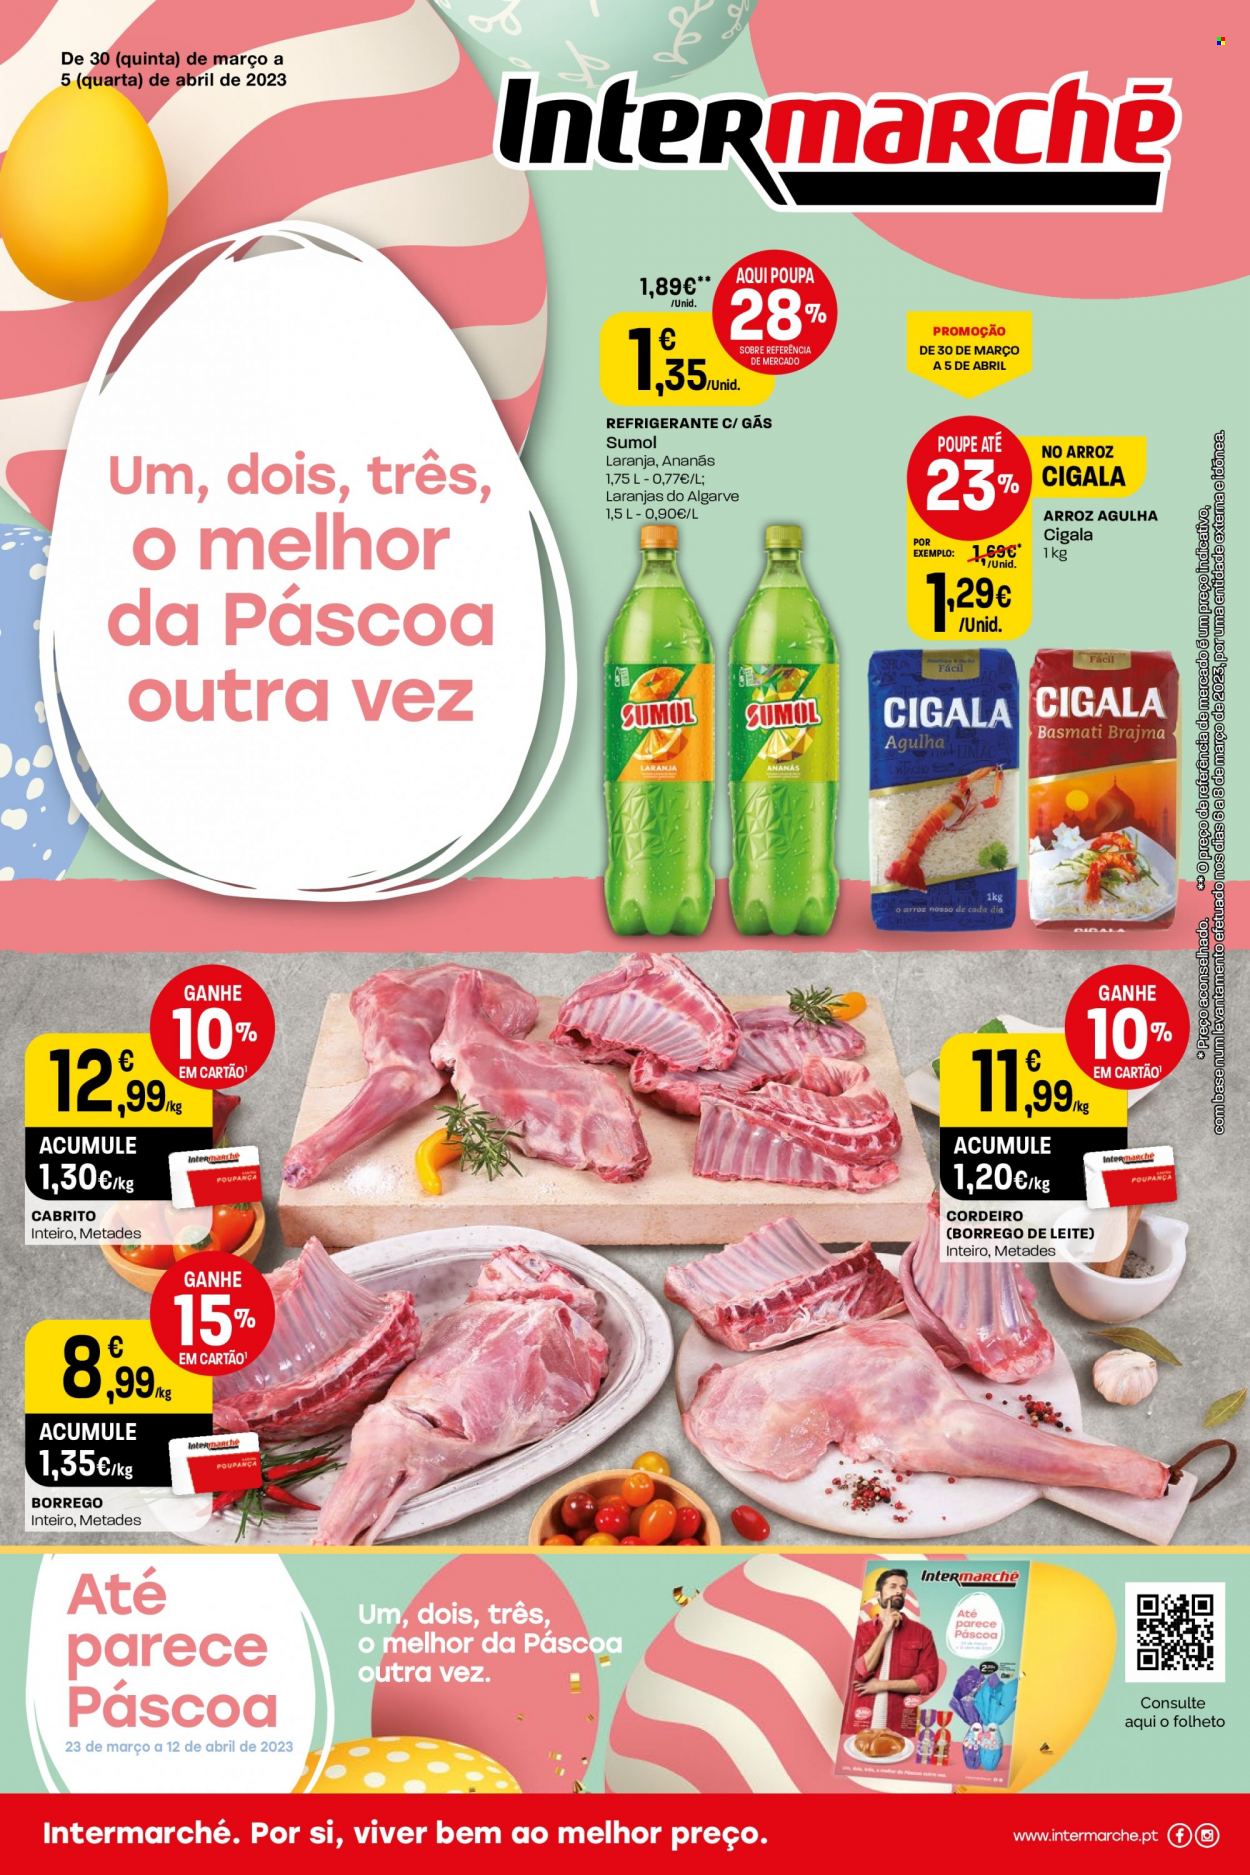 thumbnail - Folheto Intermarché - 30.3.2023 - 5.4.2023 - Produtos em promoção - cordeiro, cabrito, arroz, refrigerante, Sumol. Página 1.